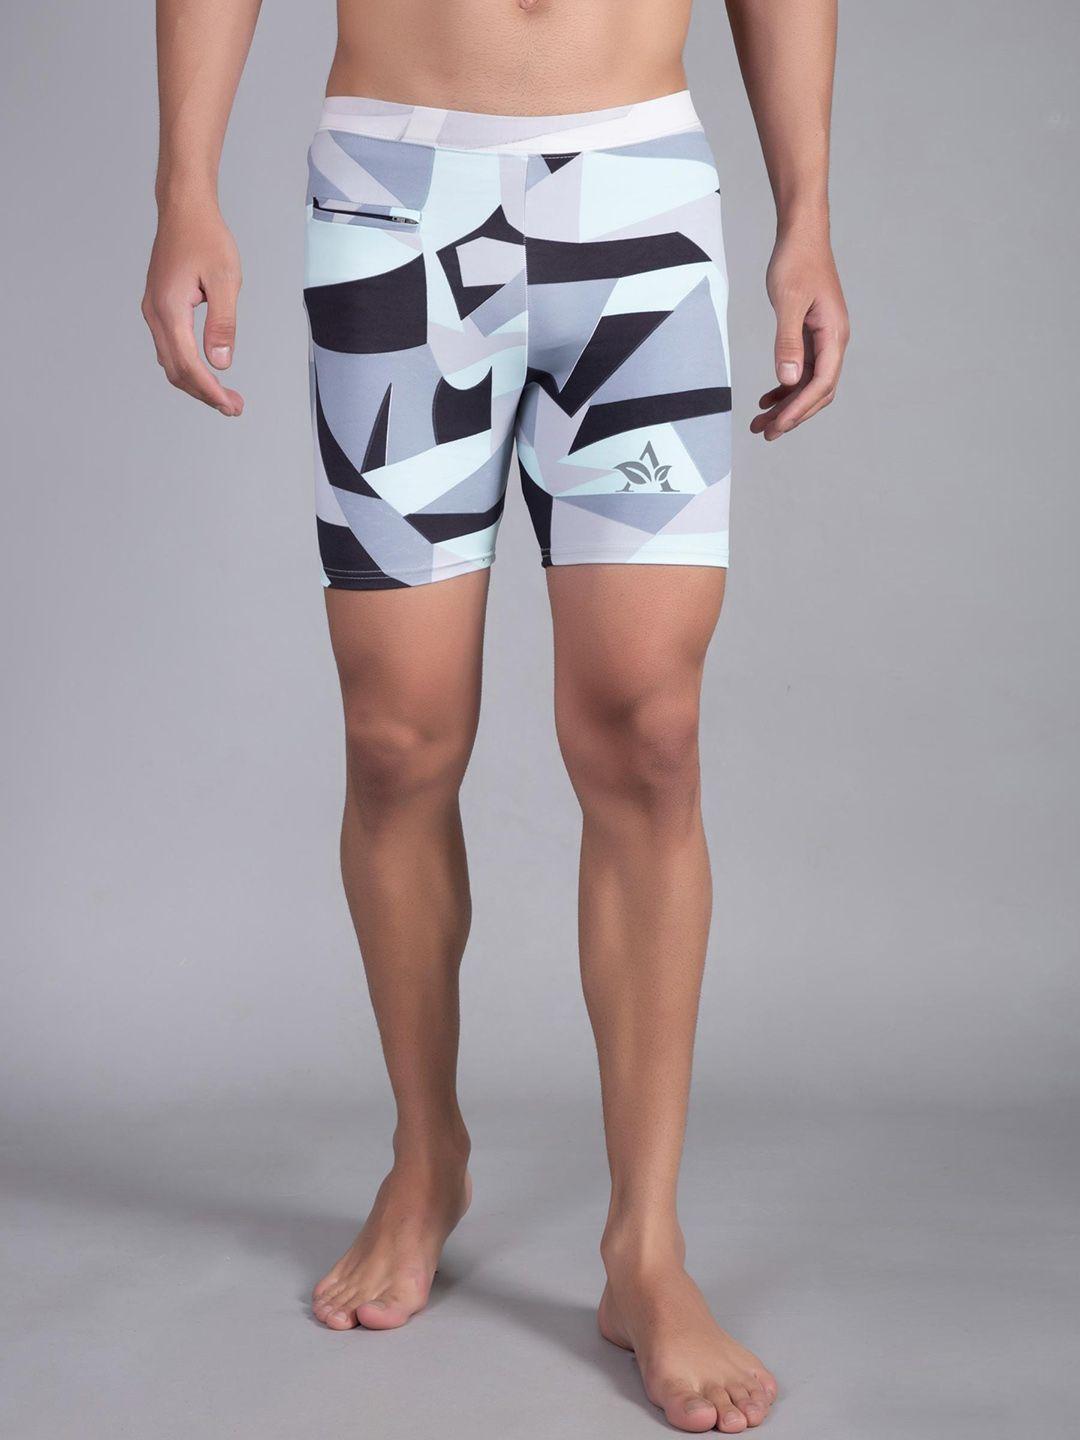 apraa & parma men skinny fit geometric printed dri-fit sports shorts